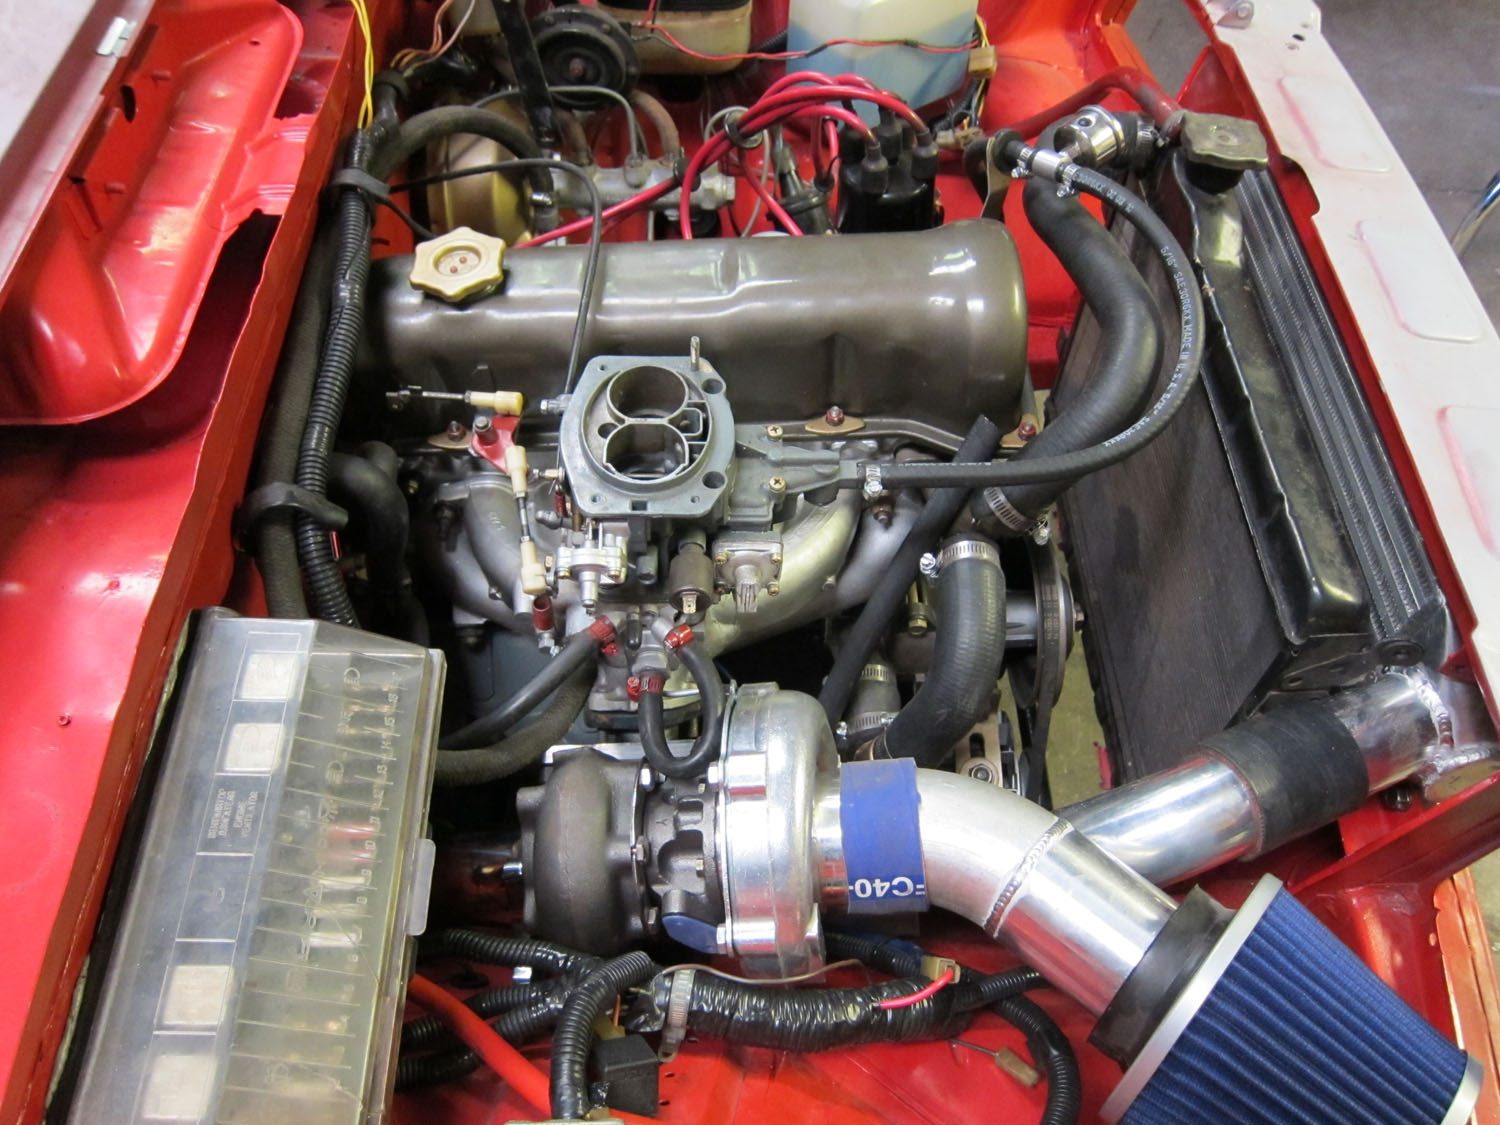 Форсированный двигатель: Что такое форсированный двигатель? Подробная информация и видео материалы